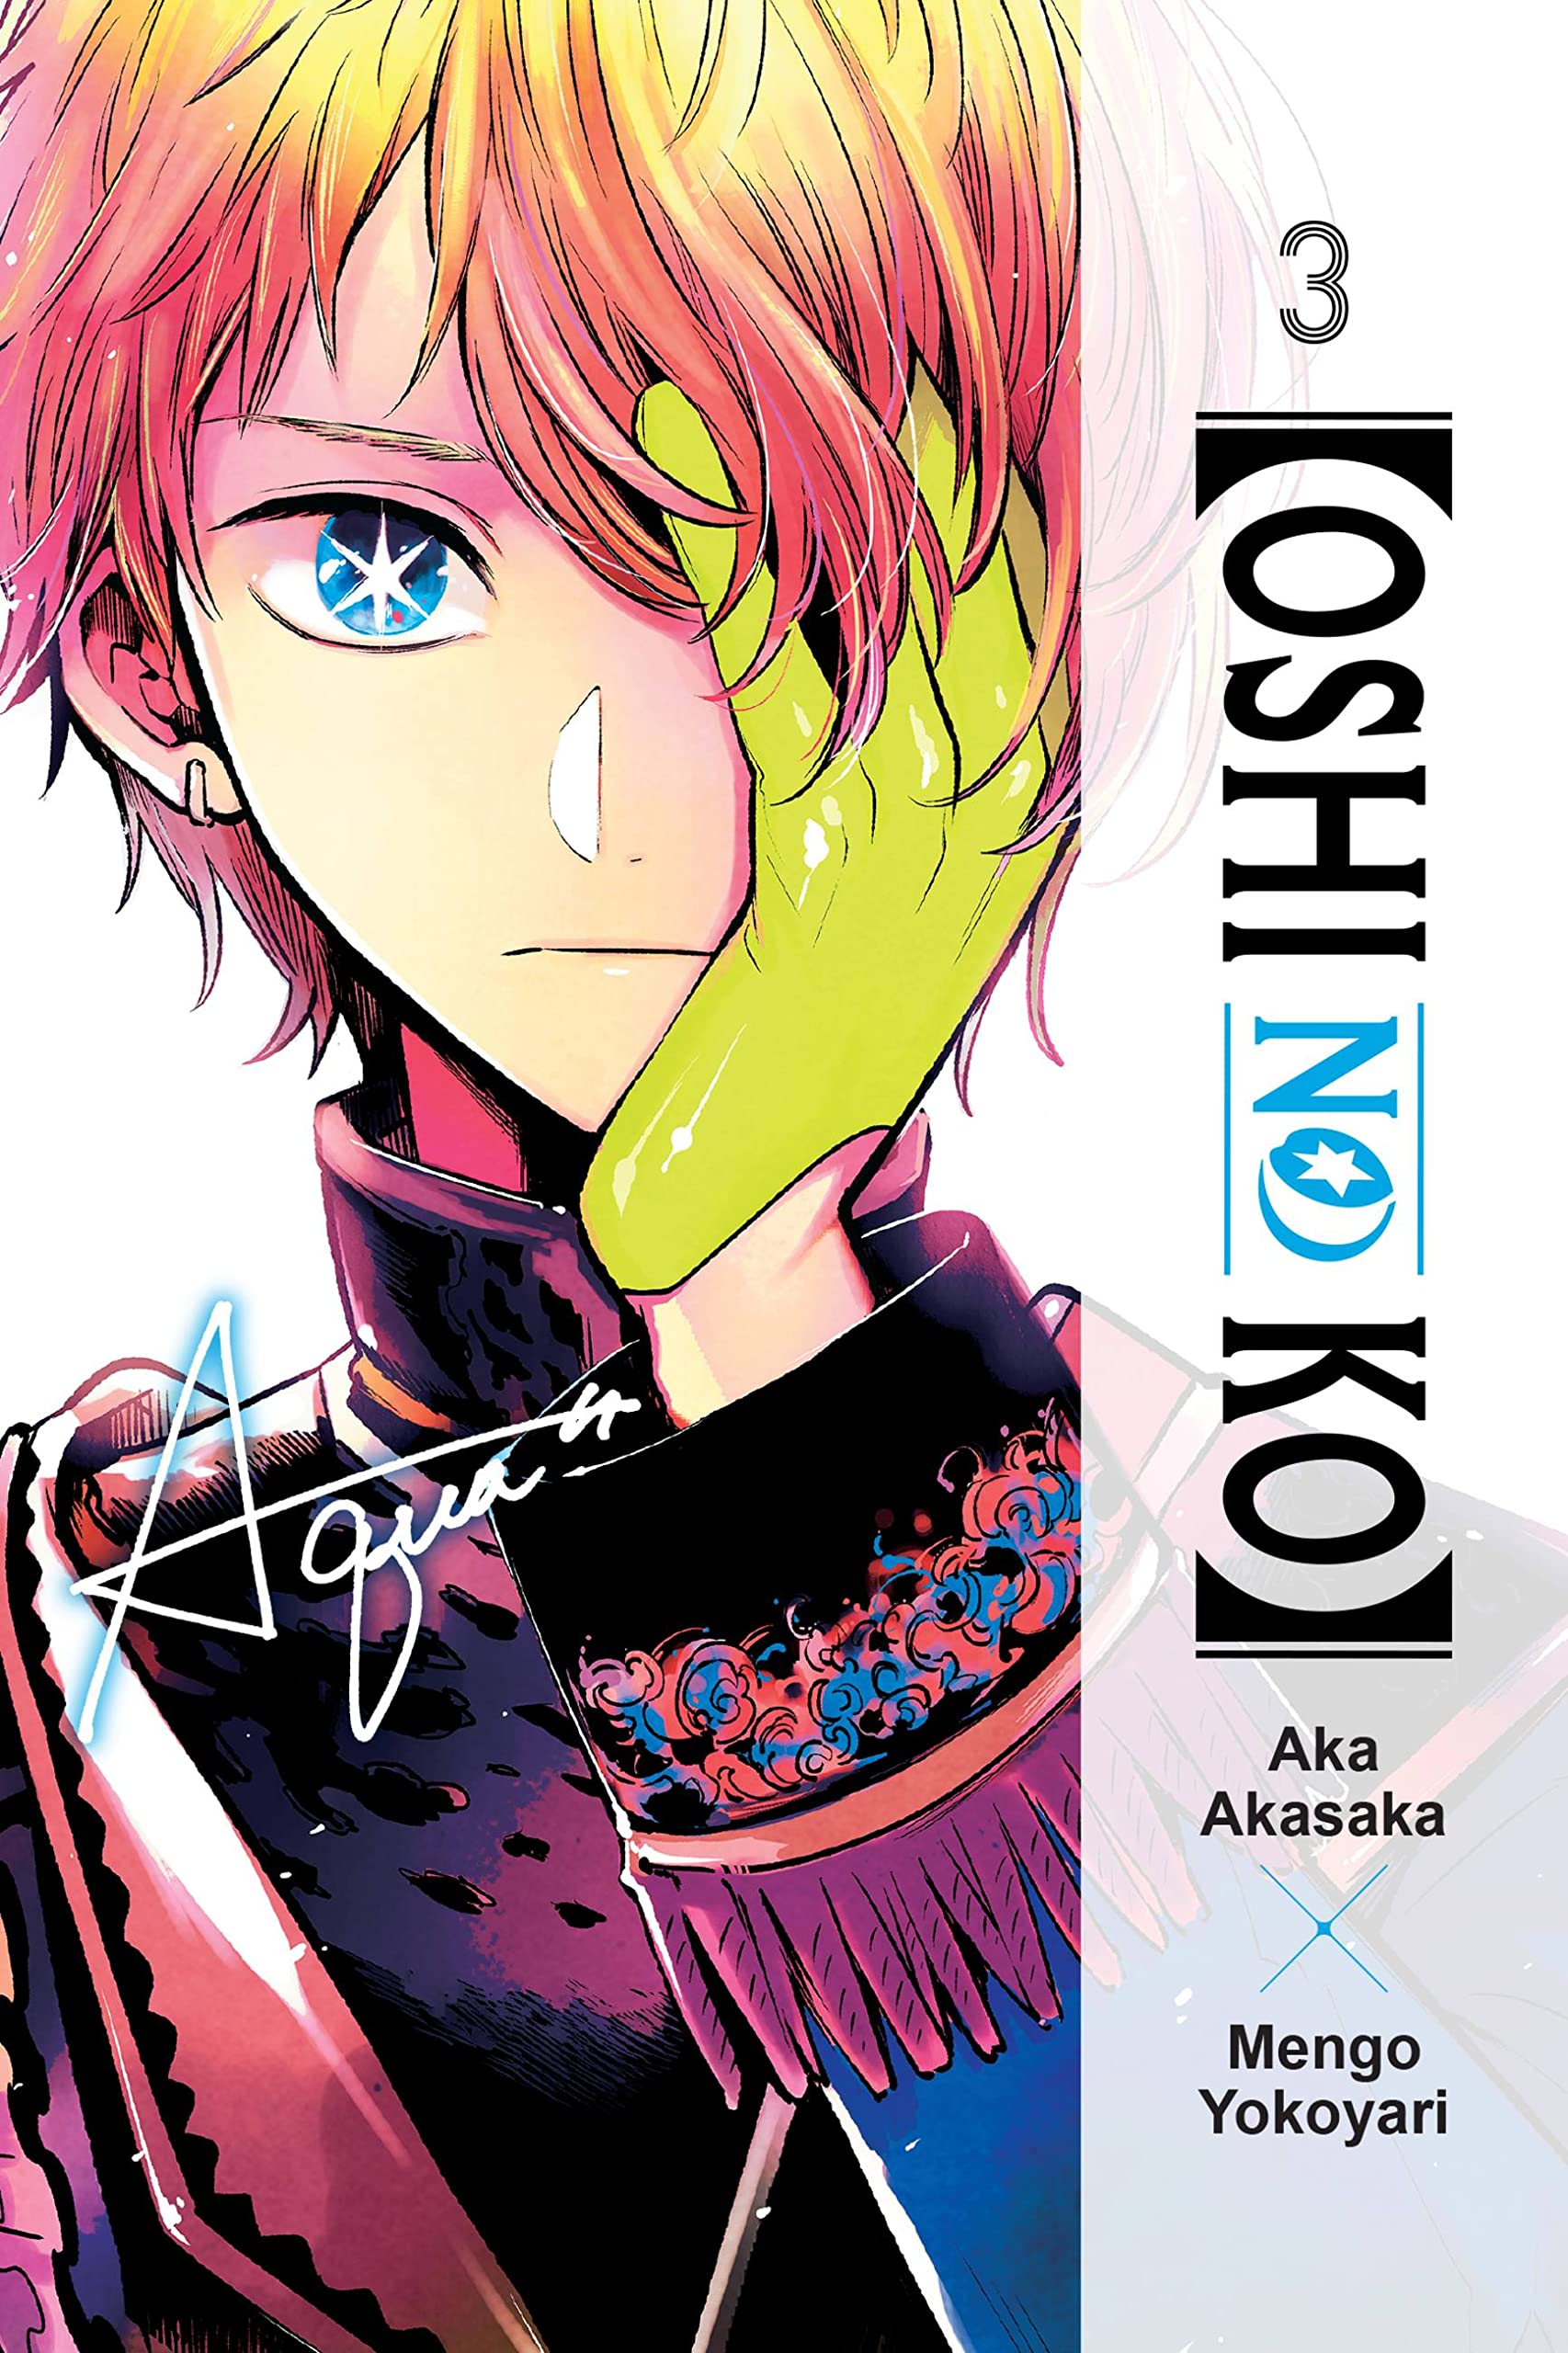 Oshi no Ko: Meet the Manga's Main Characters